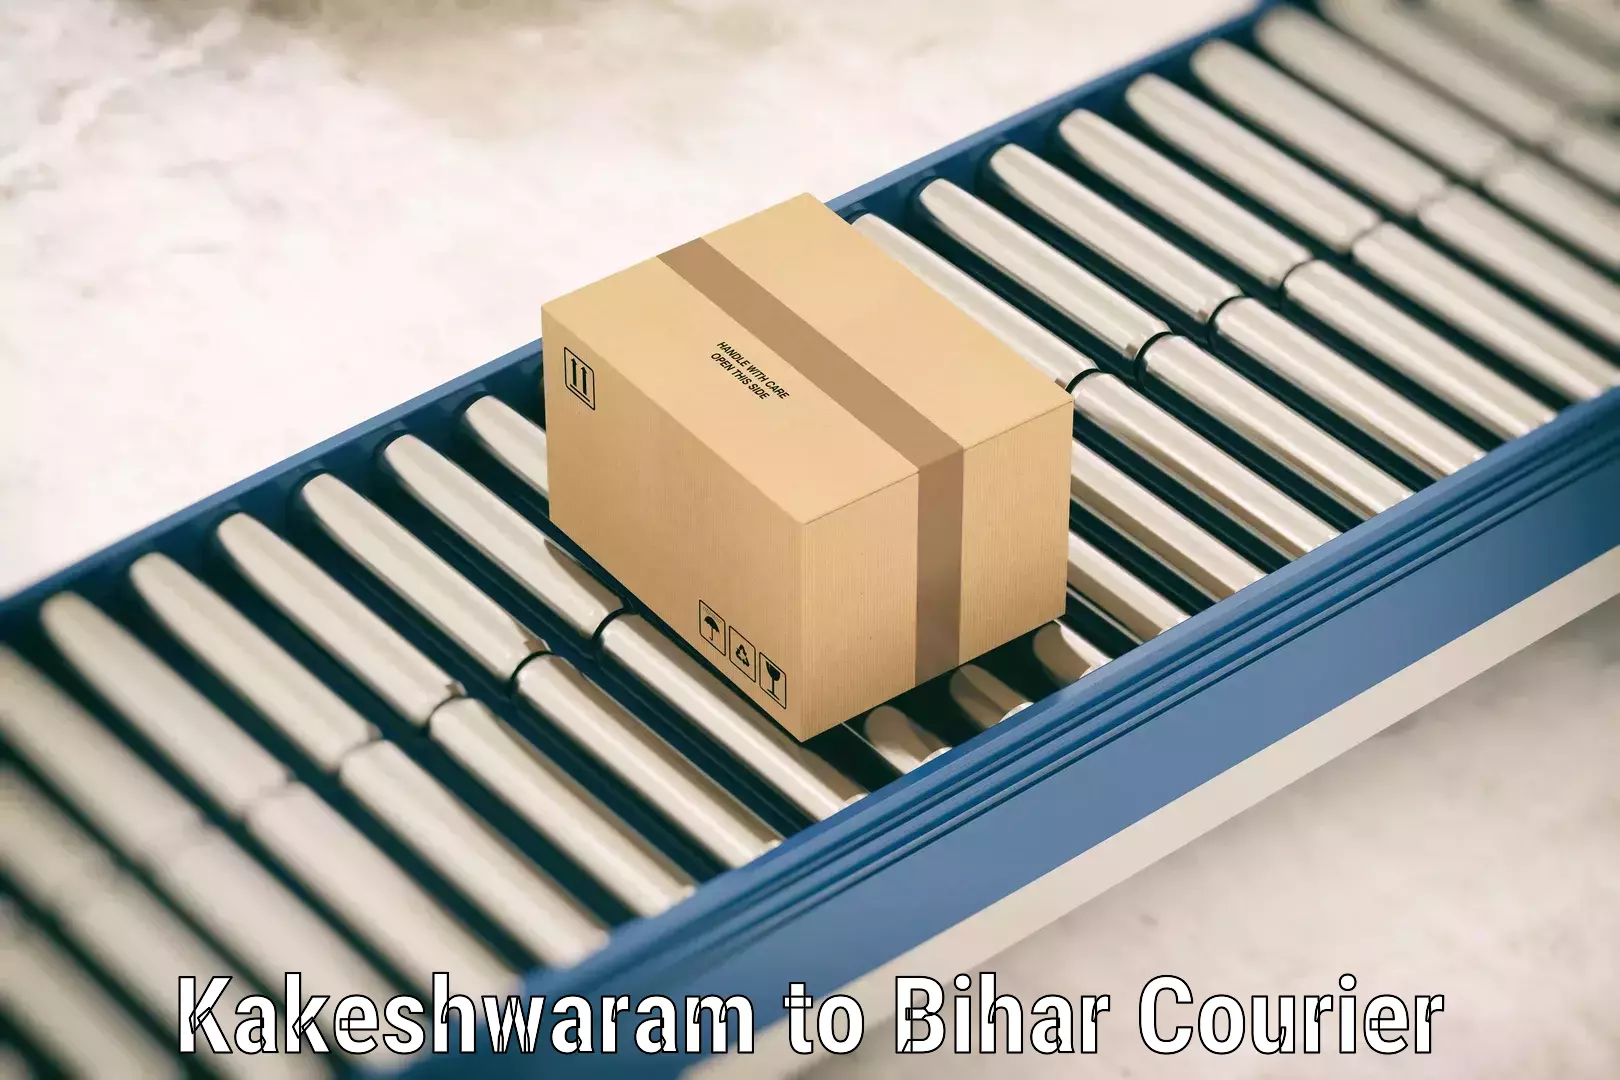 Luggage transit service Kakeshwaram to Bihar